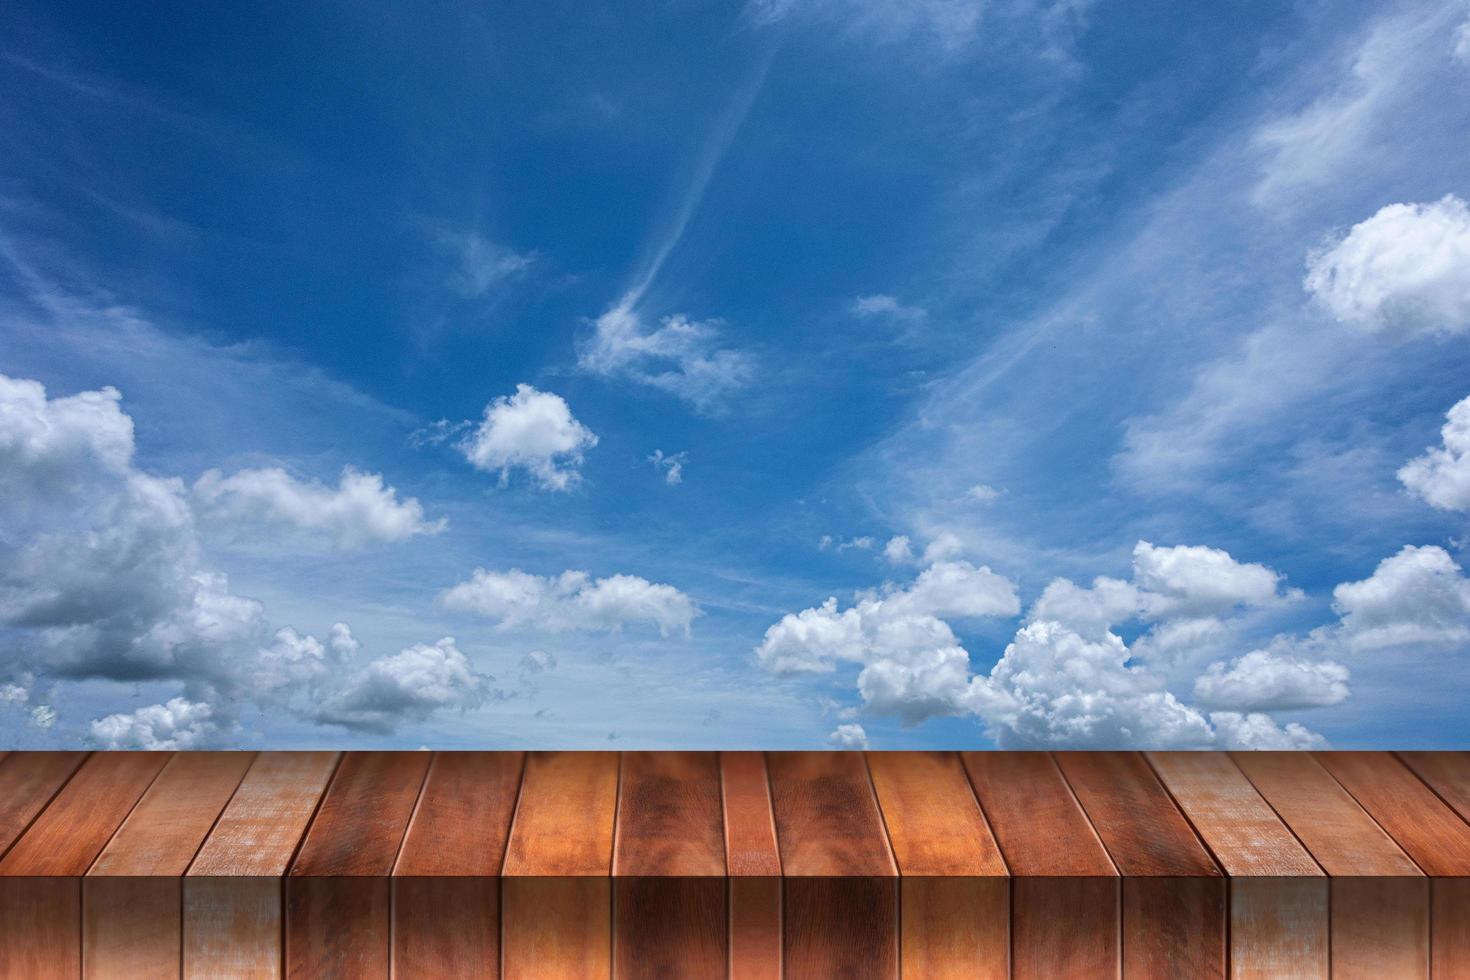 piso de madeira com fundo de céu e nuvens, foto